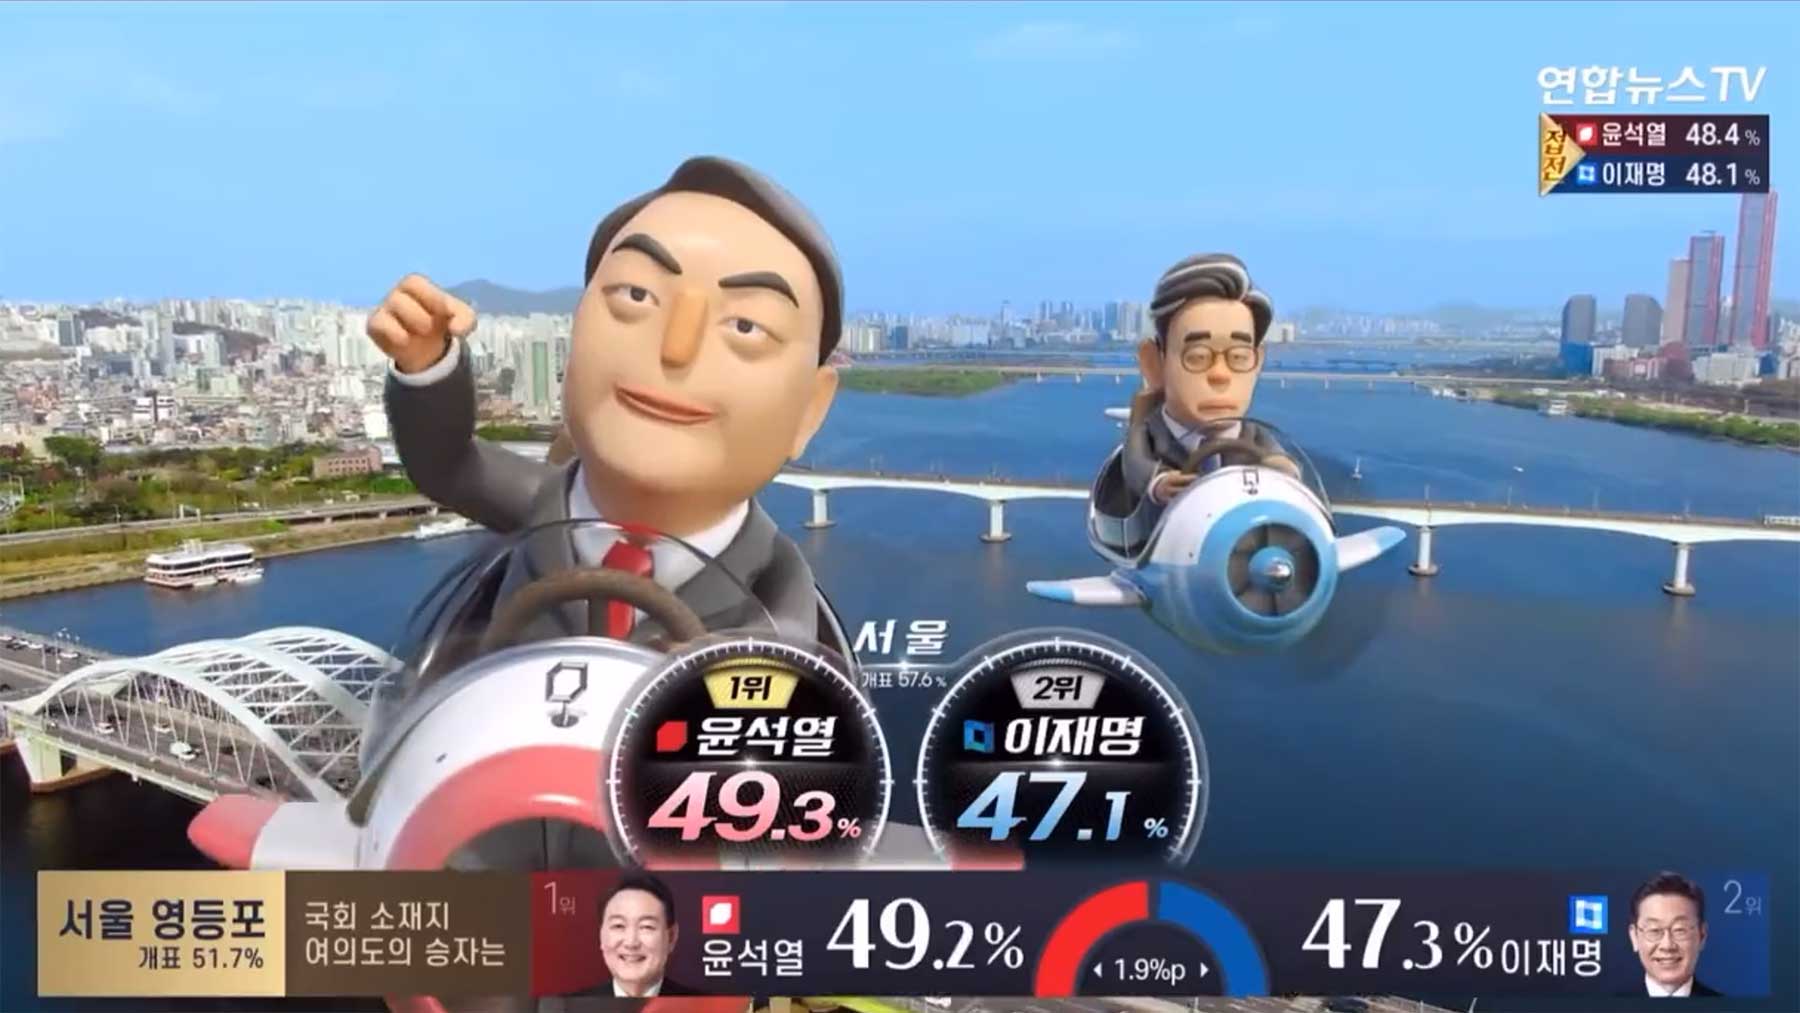 Die verrückten Animationsgrafiken südkoreanischer Wahlergebnisse suedkoreanisches-nachrichtenfernsehen-skurrile-animationen-wahl 